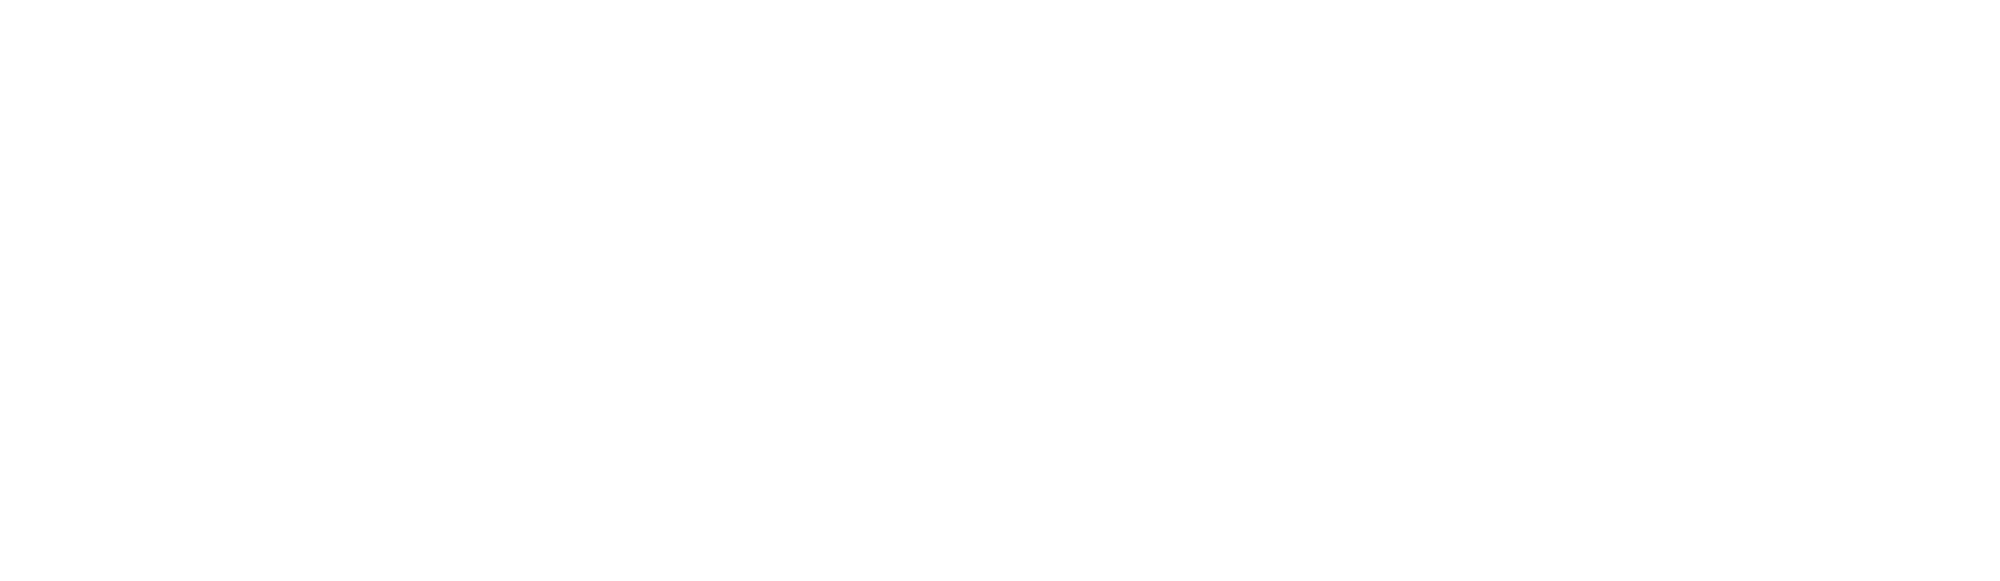 SIDE HUSTLE (Copy)